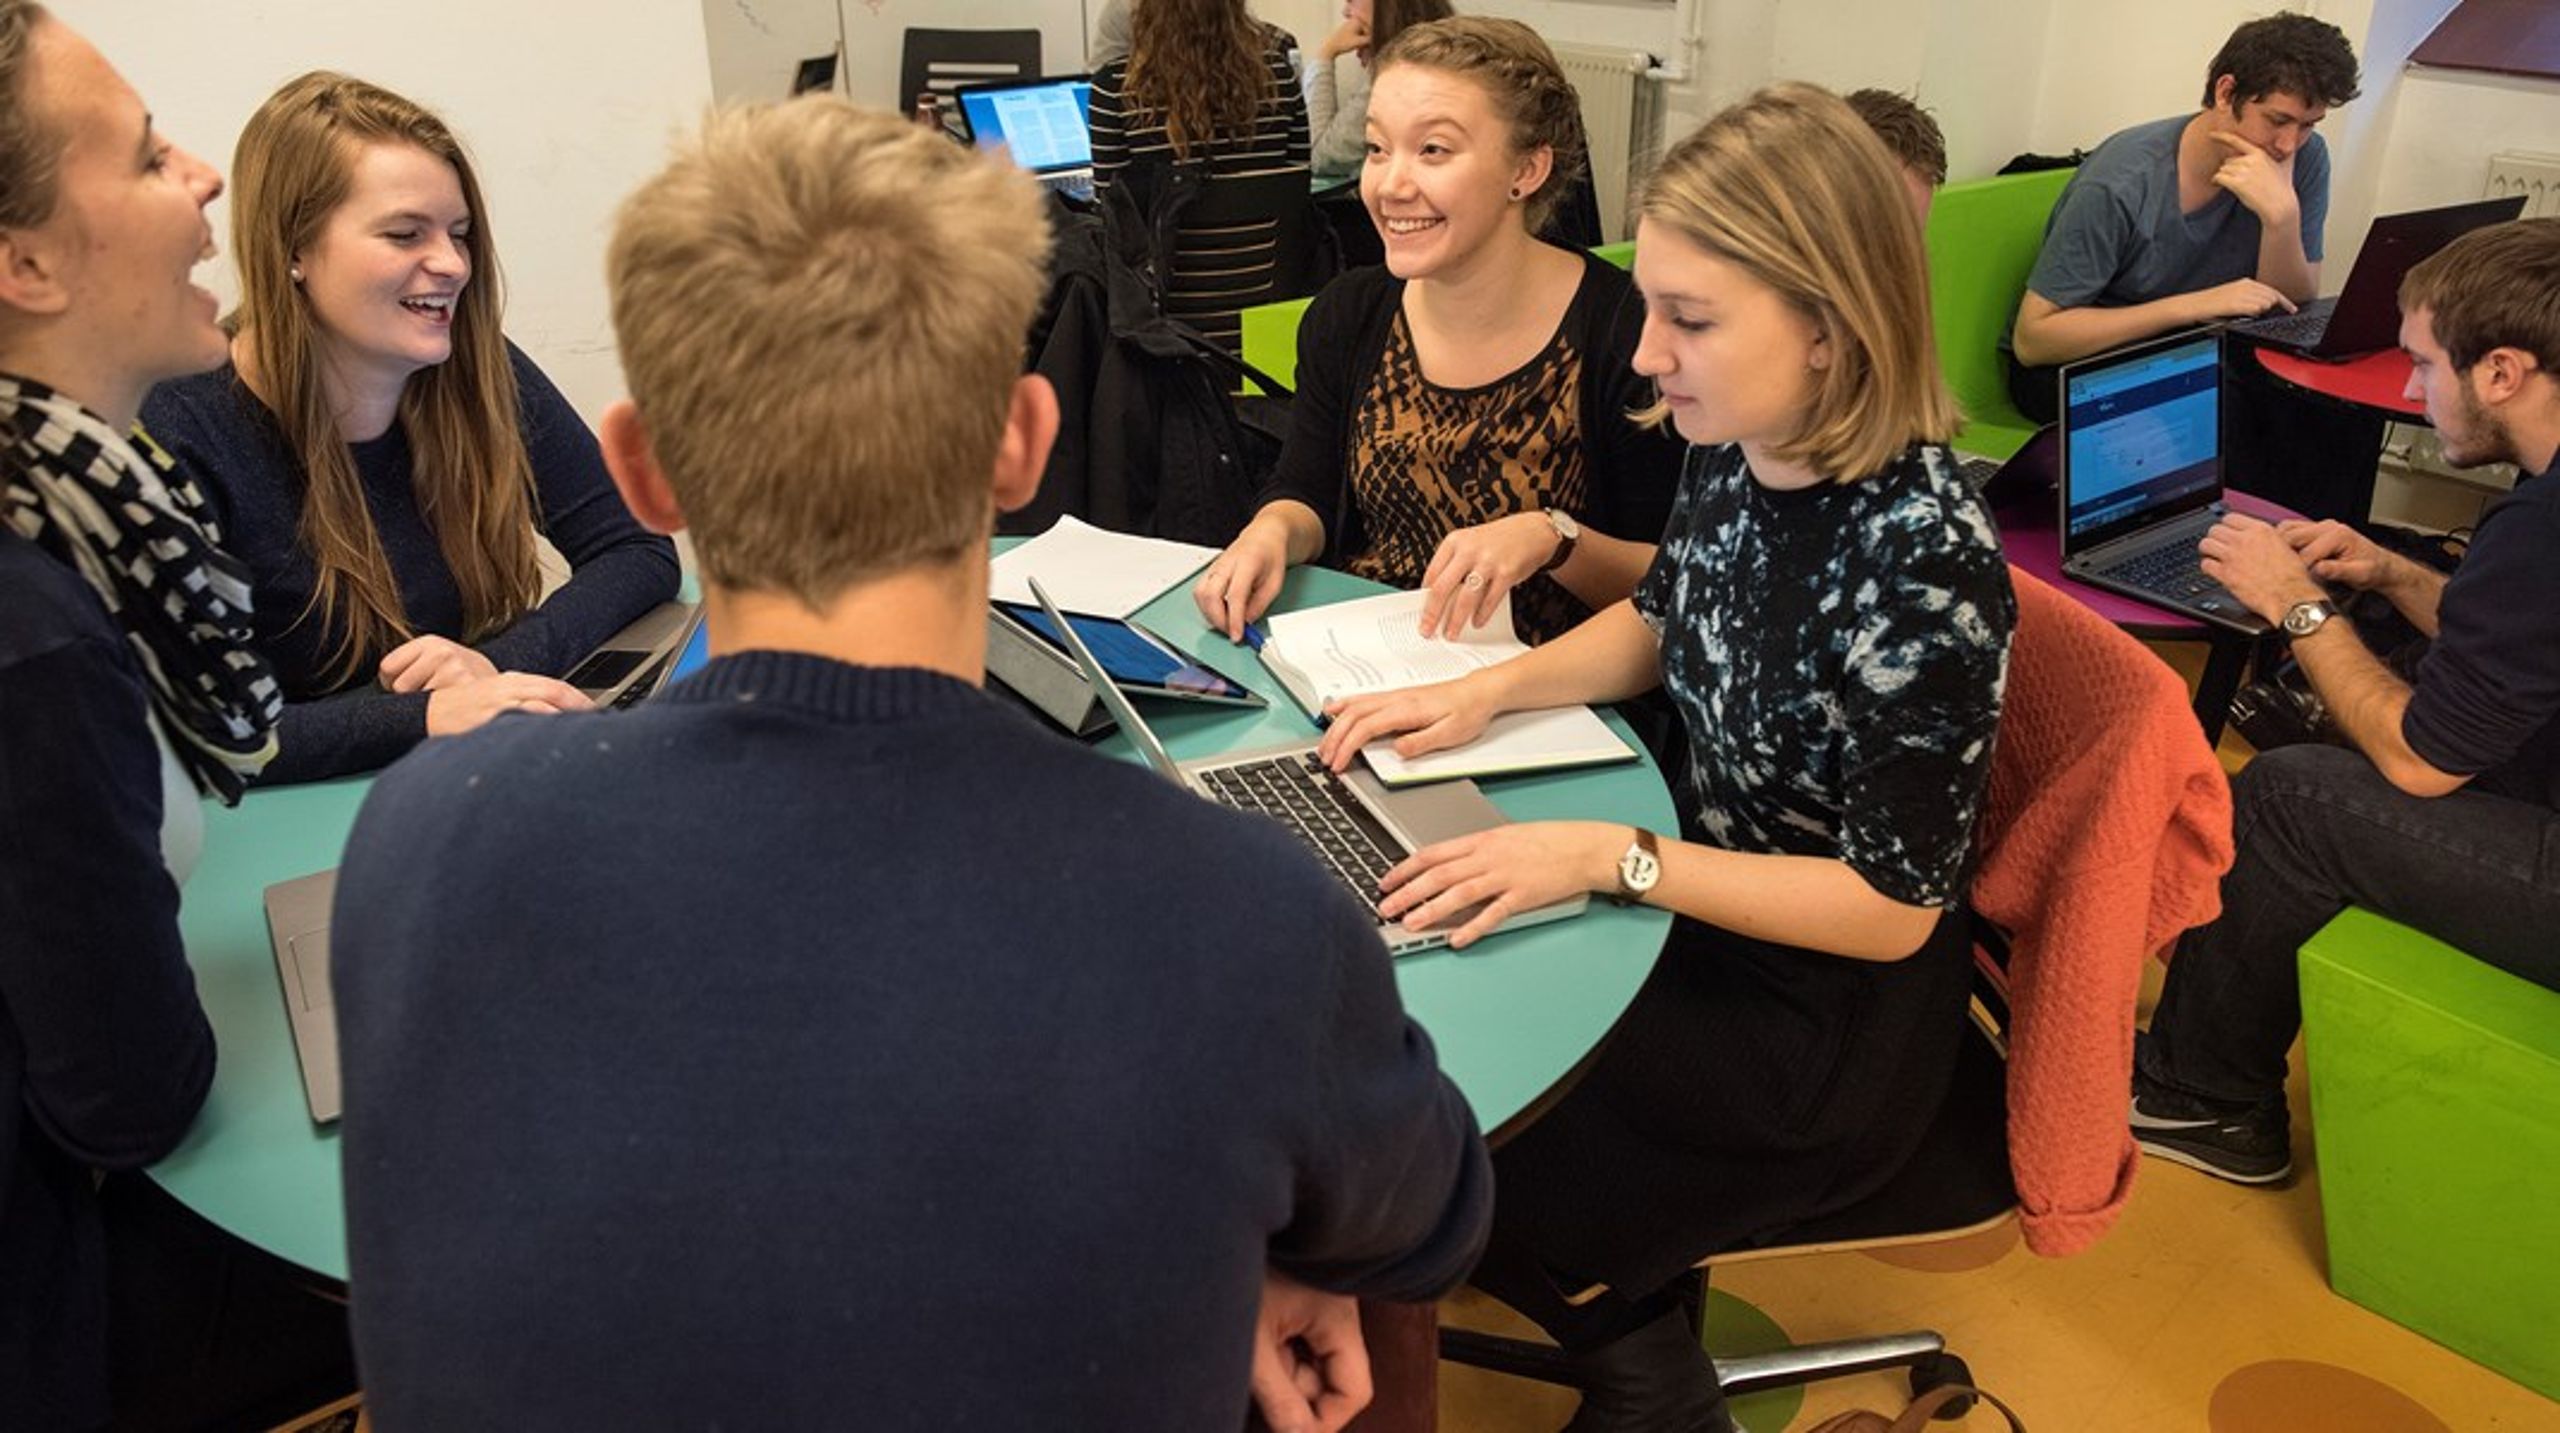 I Hillerød kan der blive skabt et tæt samarbejde mellem kommuner og uddannelser og et fagligt bæredygtigt studiemiljø på en ny læreruddannelse, skriver otte nordsjællandske borgmestre.